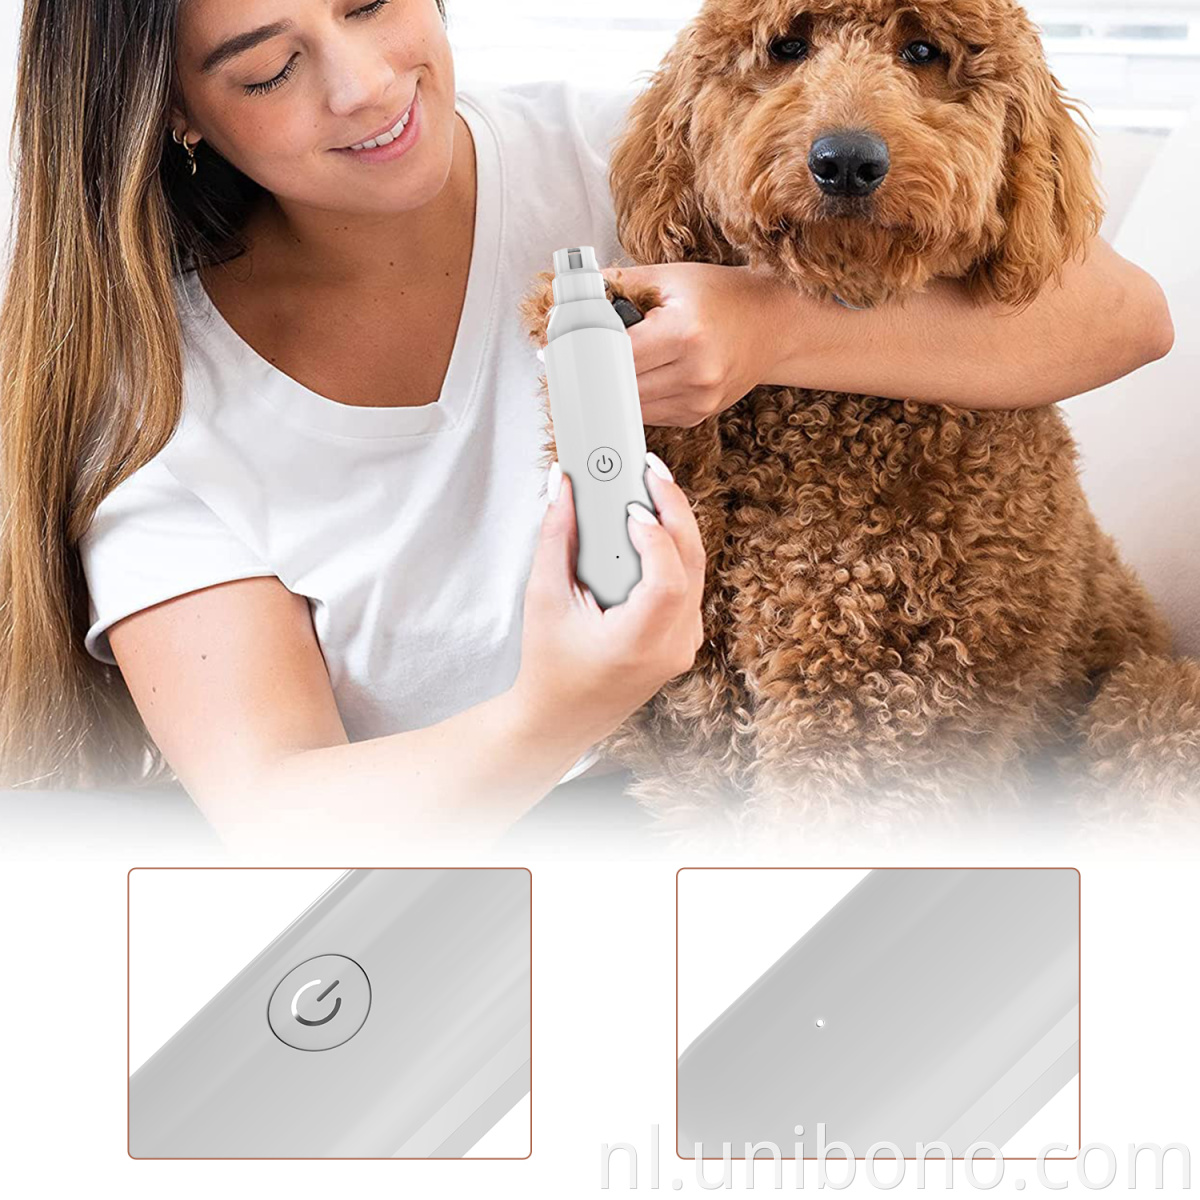 usb rechargeable pet safe dog nail grinder